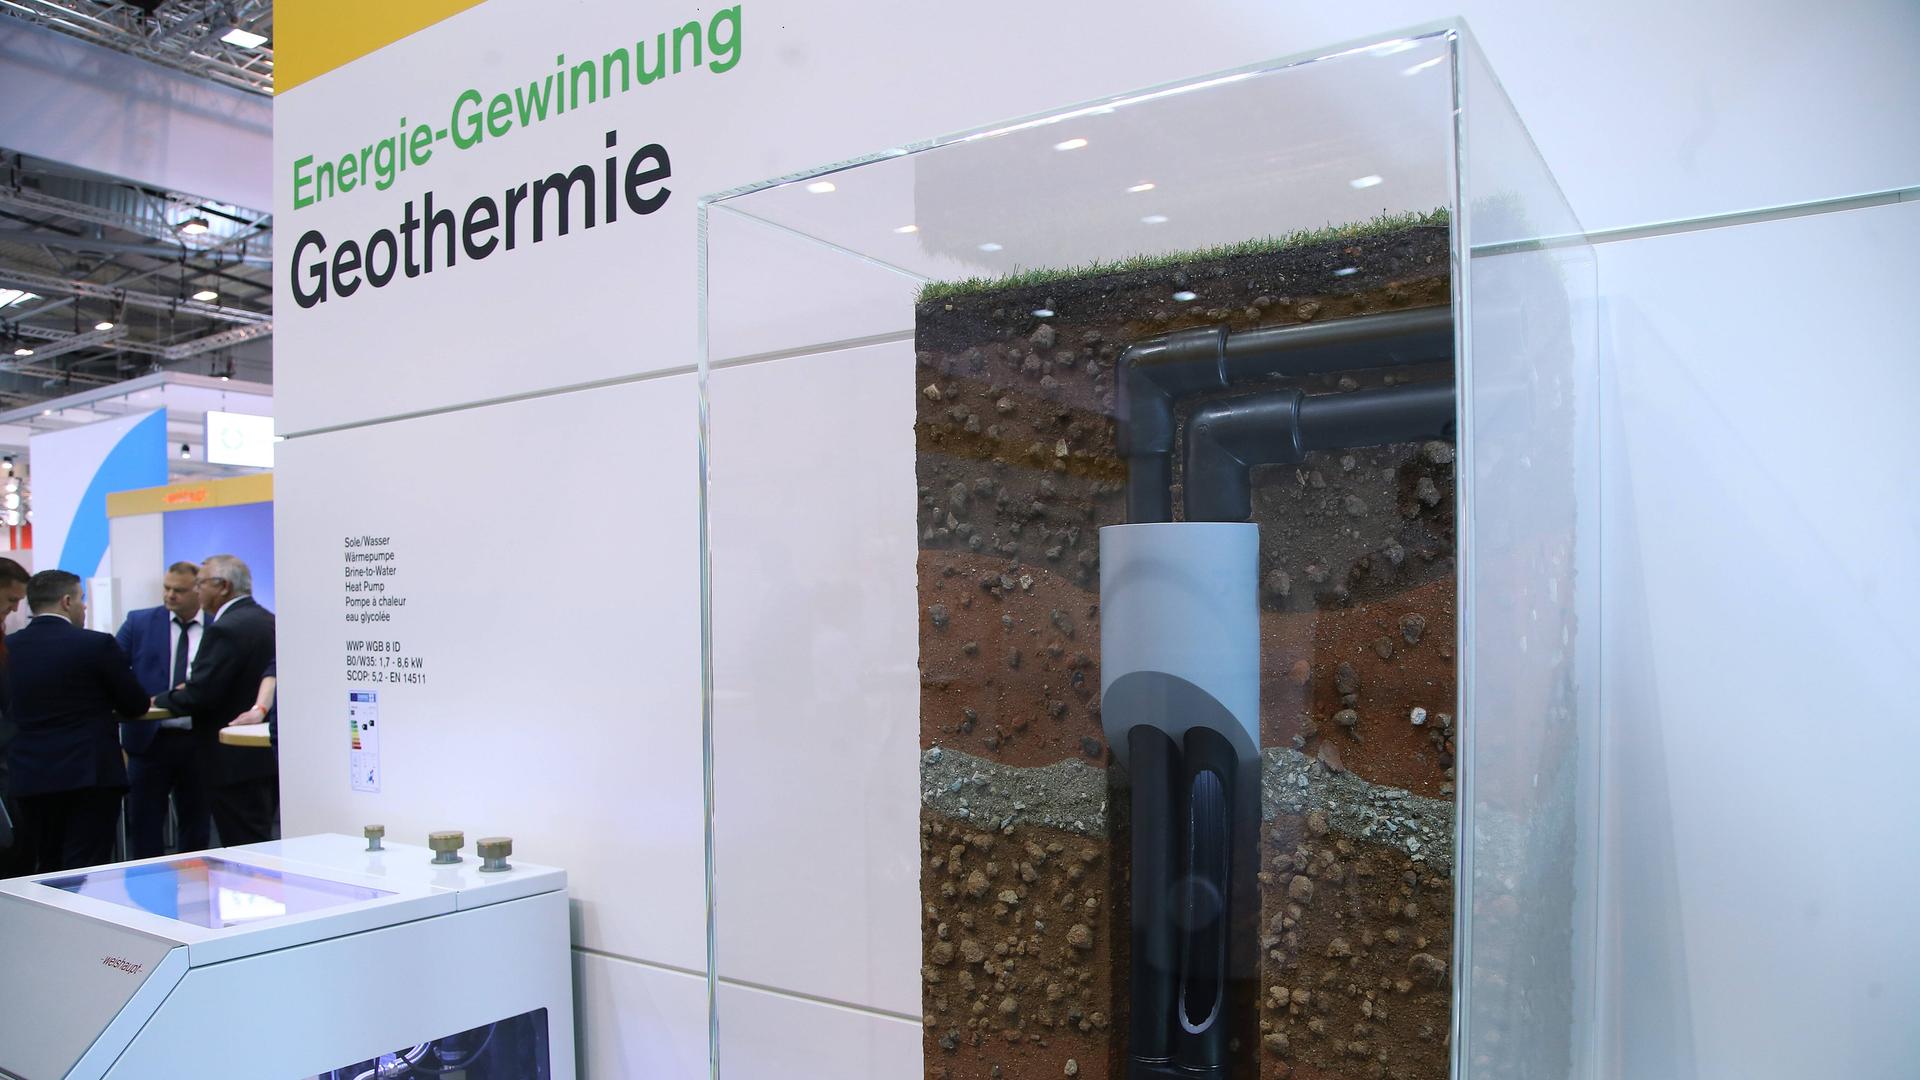 Modell für Erdwärmegewinnung, Geothermie, auf der Fachmesse für die Branchen Sanitär, Heizung, Klima und digitales Gebäudemanagement in Essen